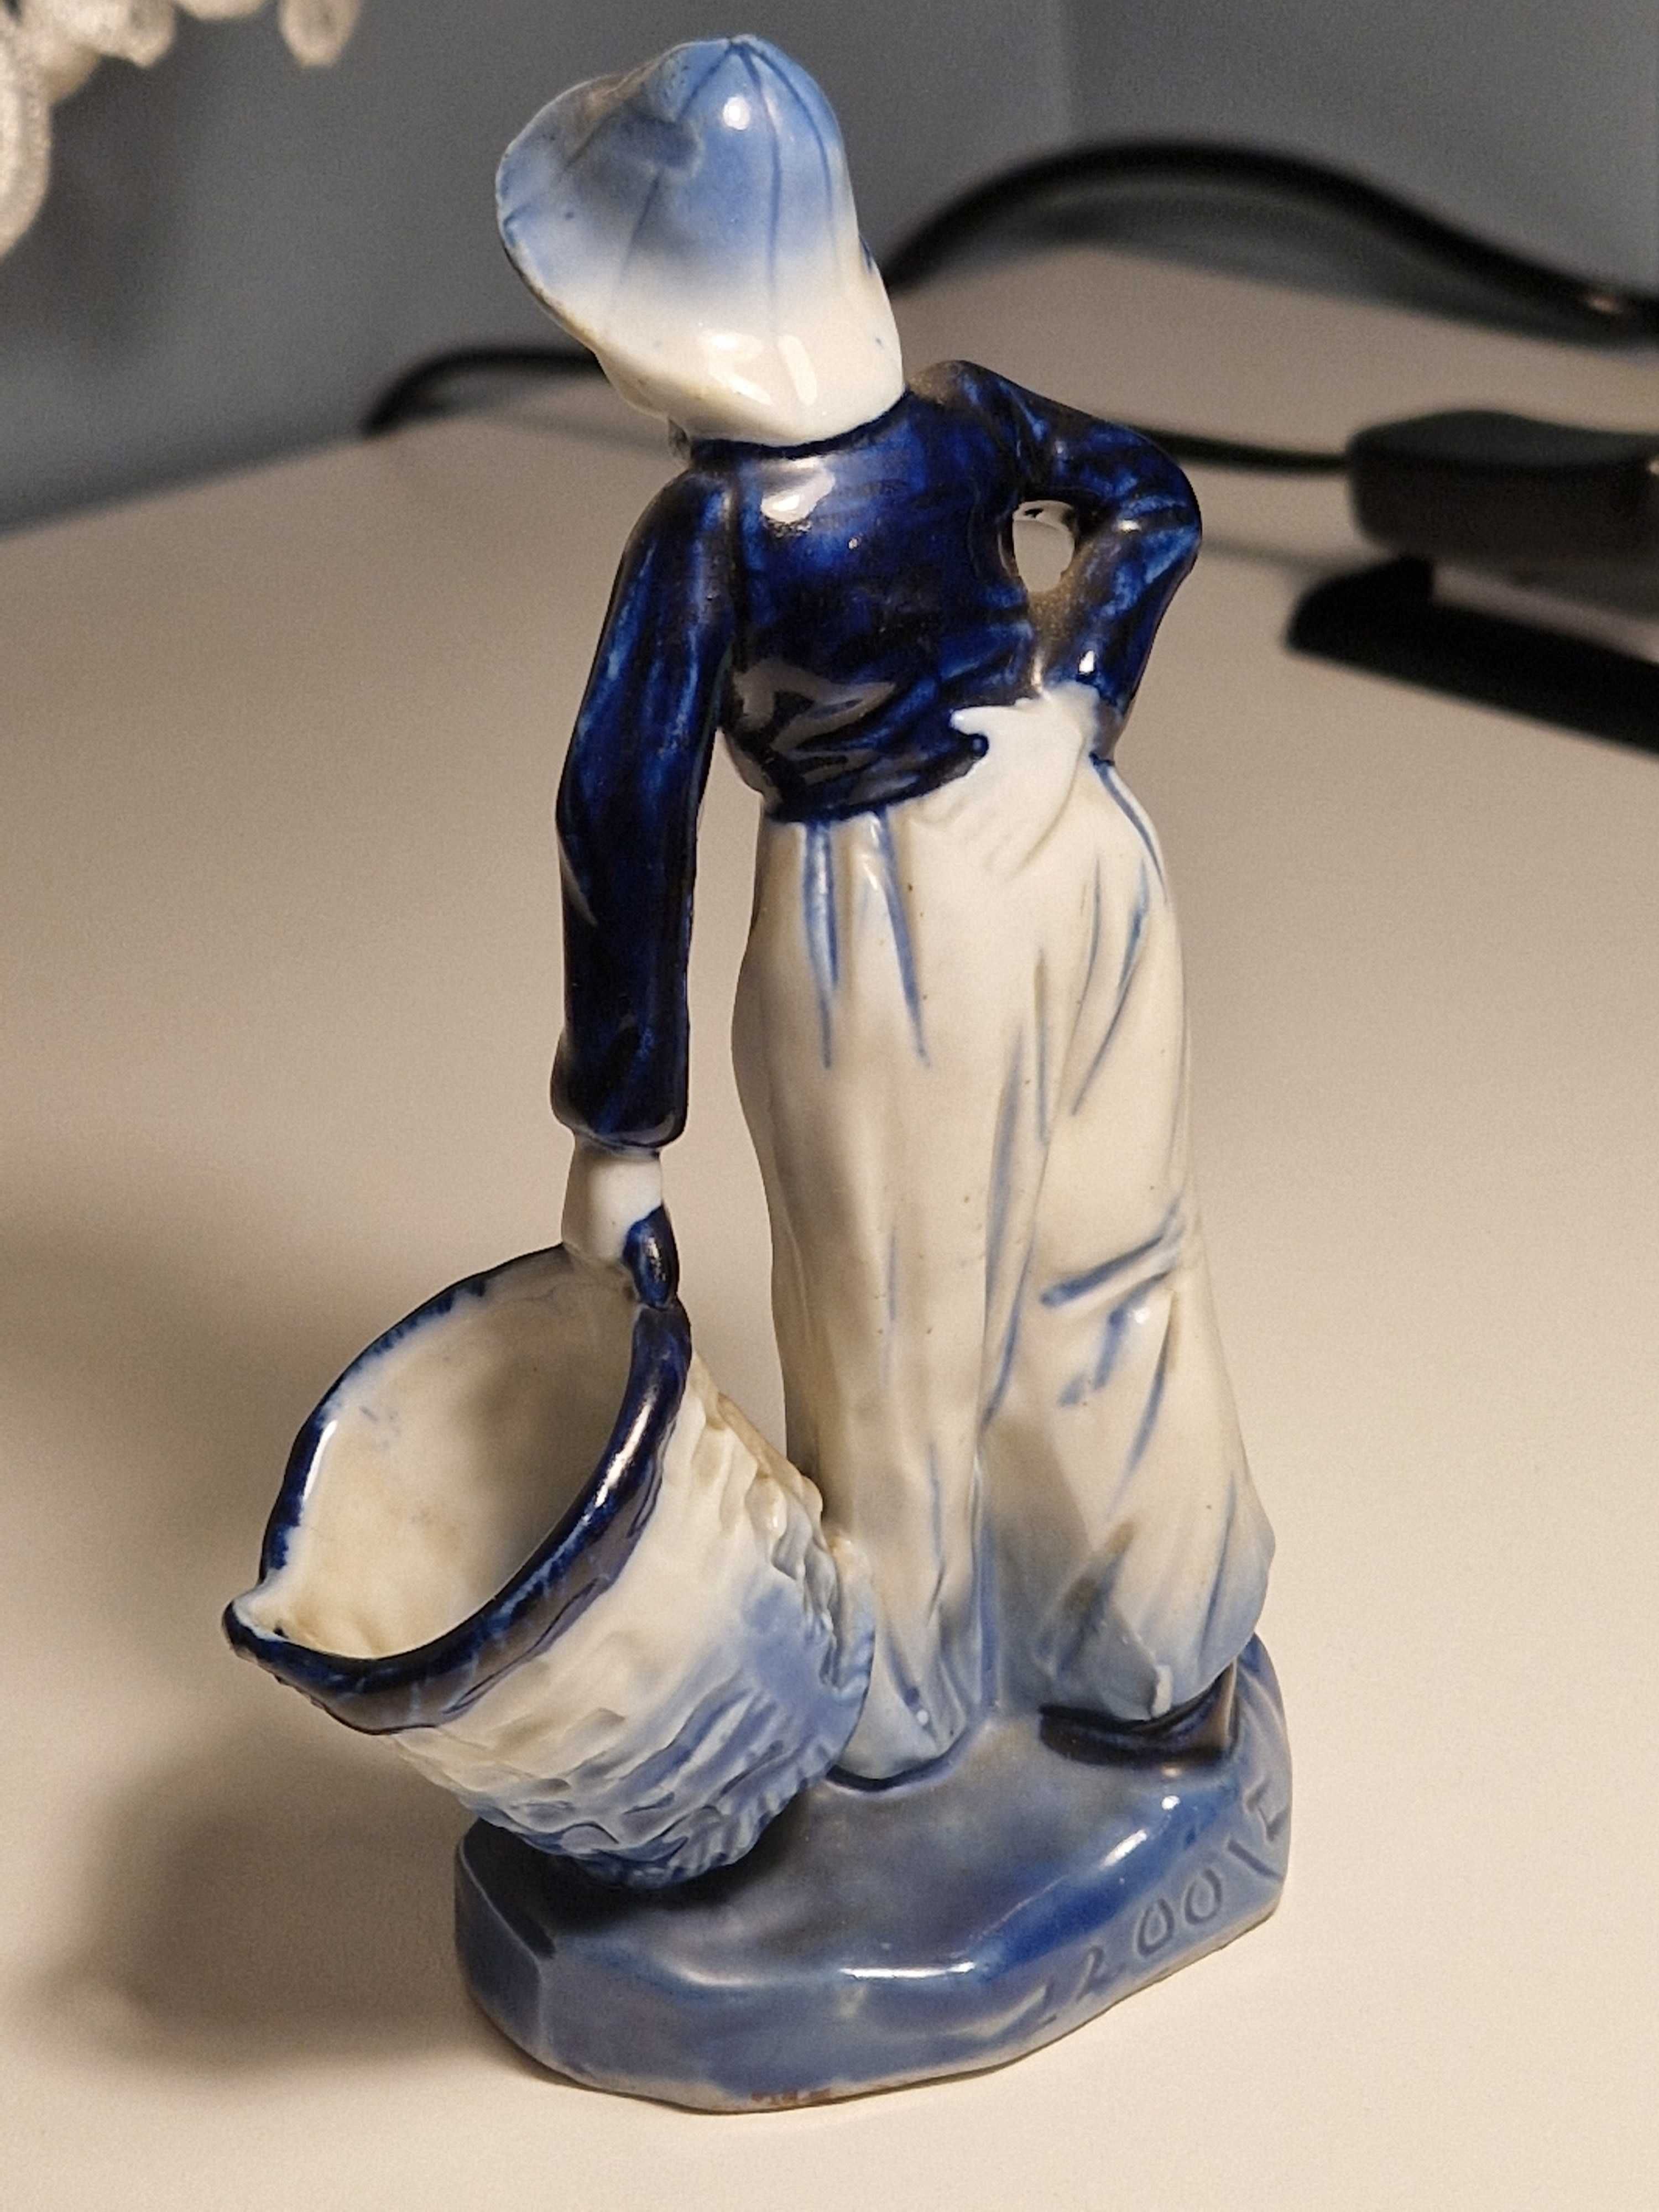 Delft figurka porcelanowa mężczyzny Rauenstein Turyngia 1900a1920rok